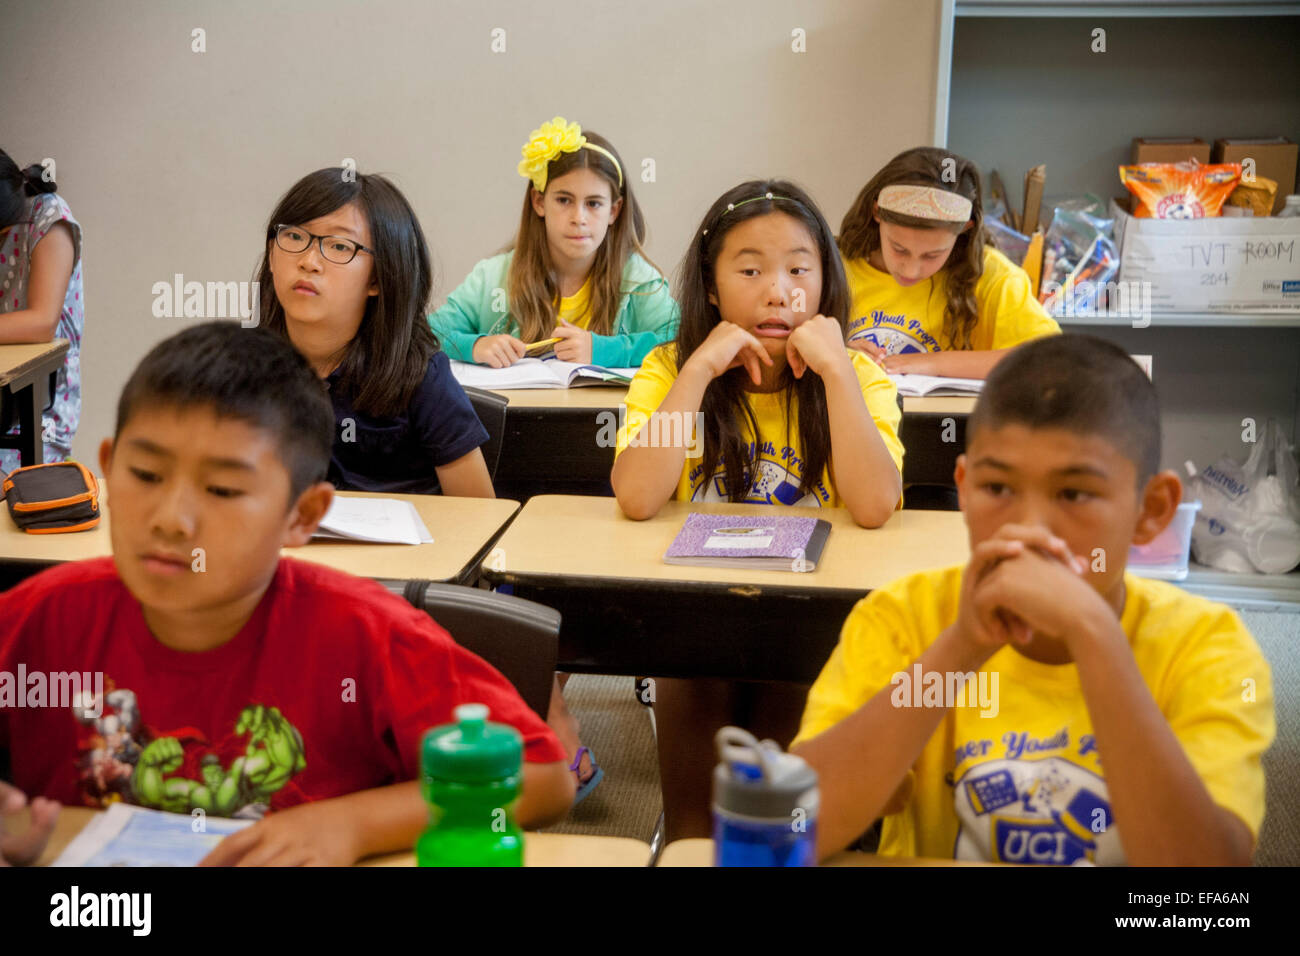 Zeigt eine Vielzahl von Ausdrucksformen, Asien, Hispanic und kaukasischen Mittelschule Studenten anhören ihrer Lehrer an ein Schreibprojekt Klasse in Irvine, CA. Notiz T Shirts. Stockfoto